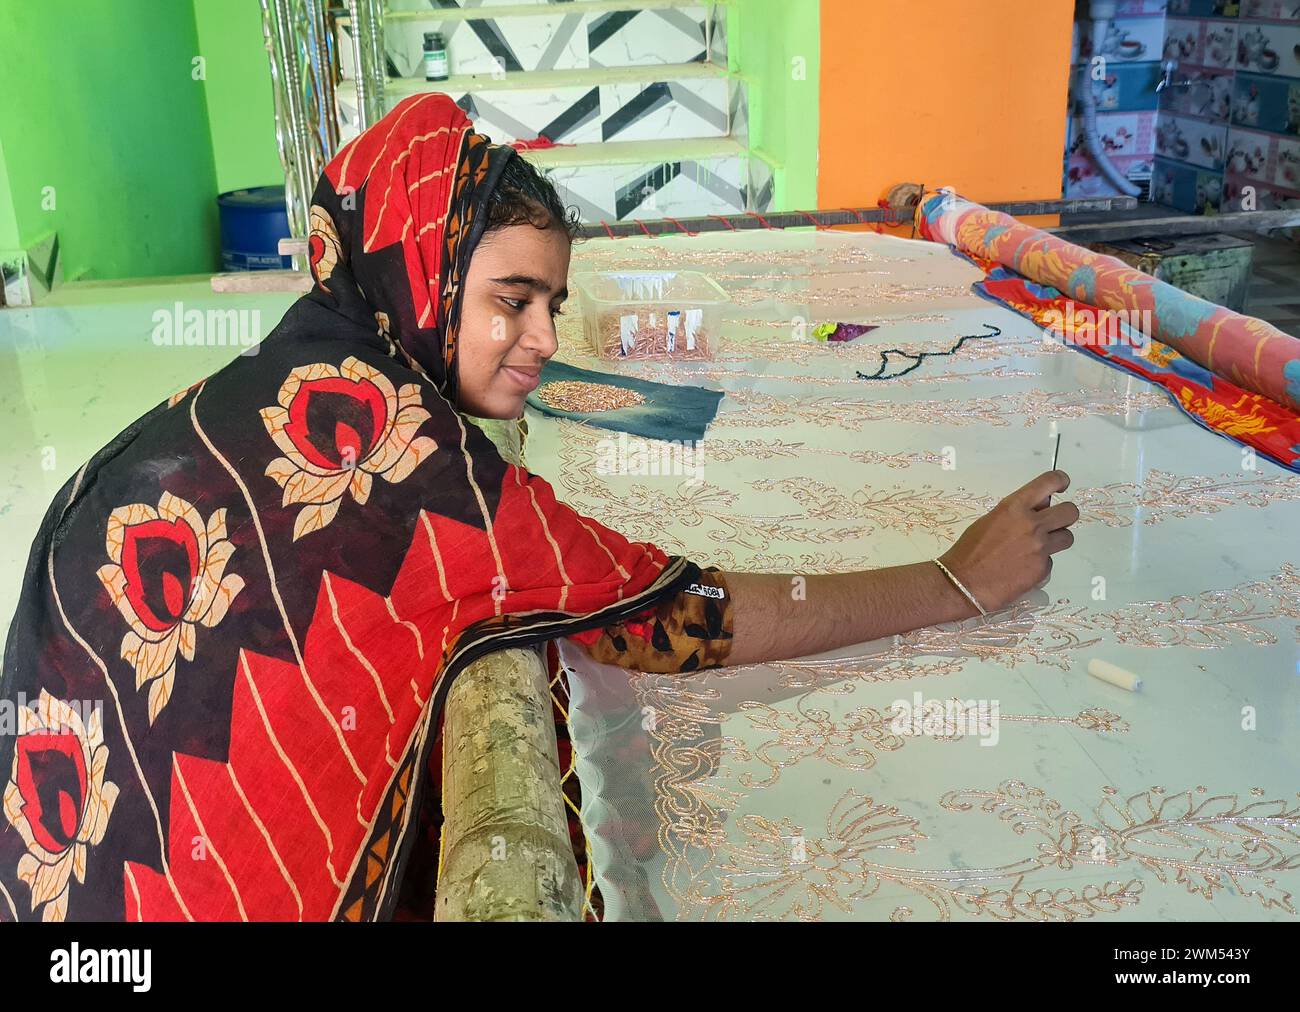 La giovane donna creò le sue opere d'arte cucendo in tessuto (Saree) per il suo sostentamento nel Bengala Occidentale in India. Foto Stock